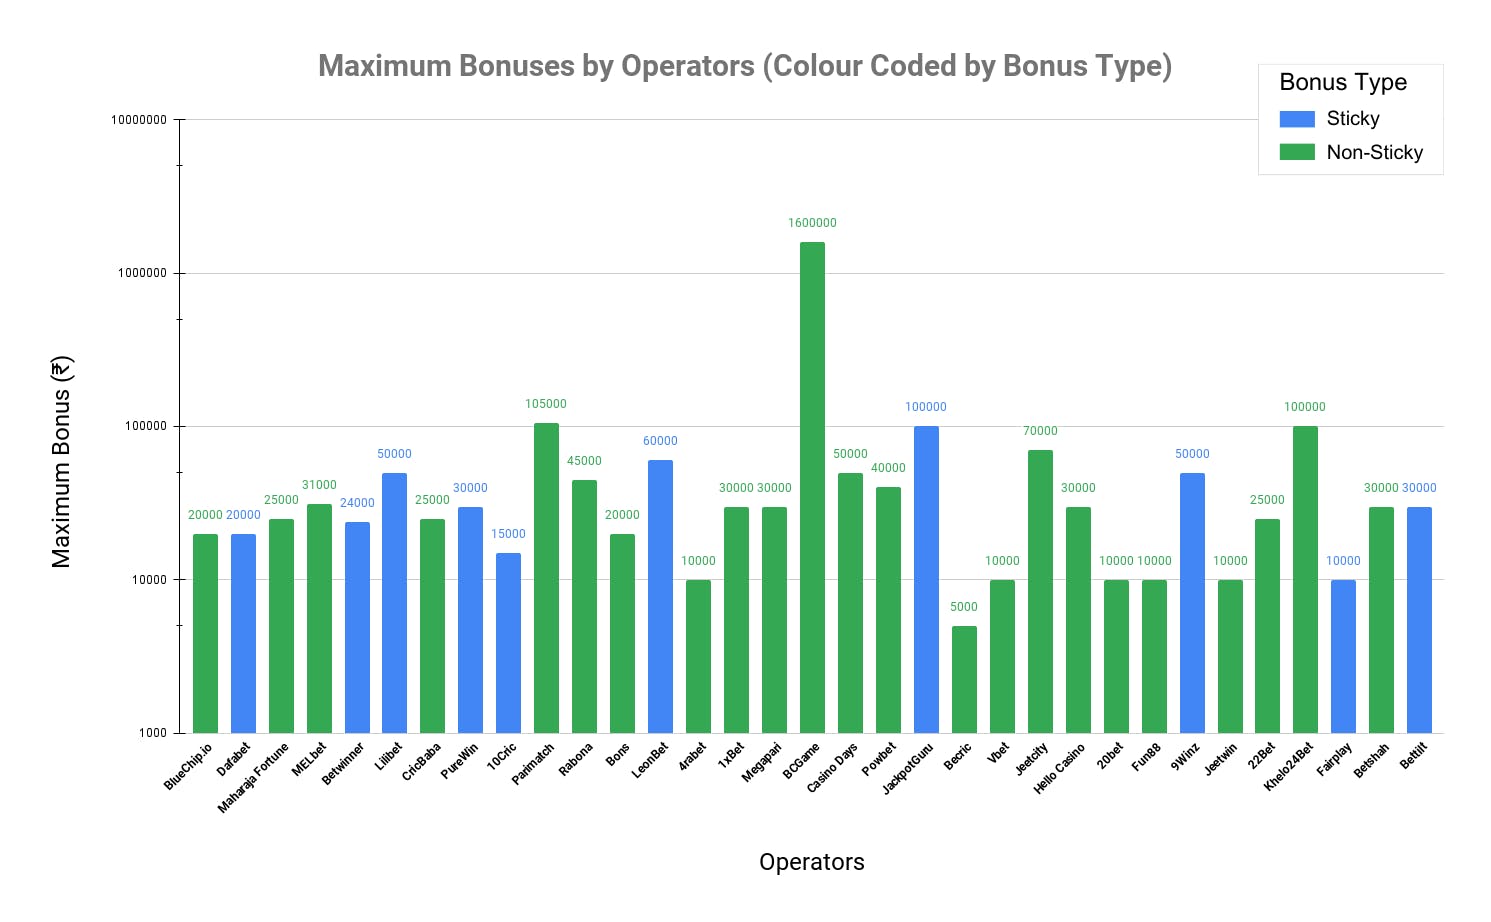 Maximum Bonuses by Operators